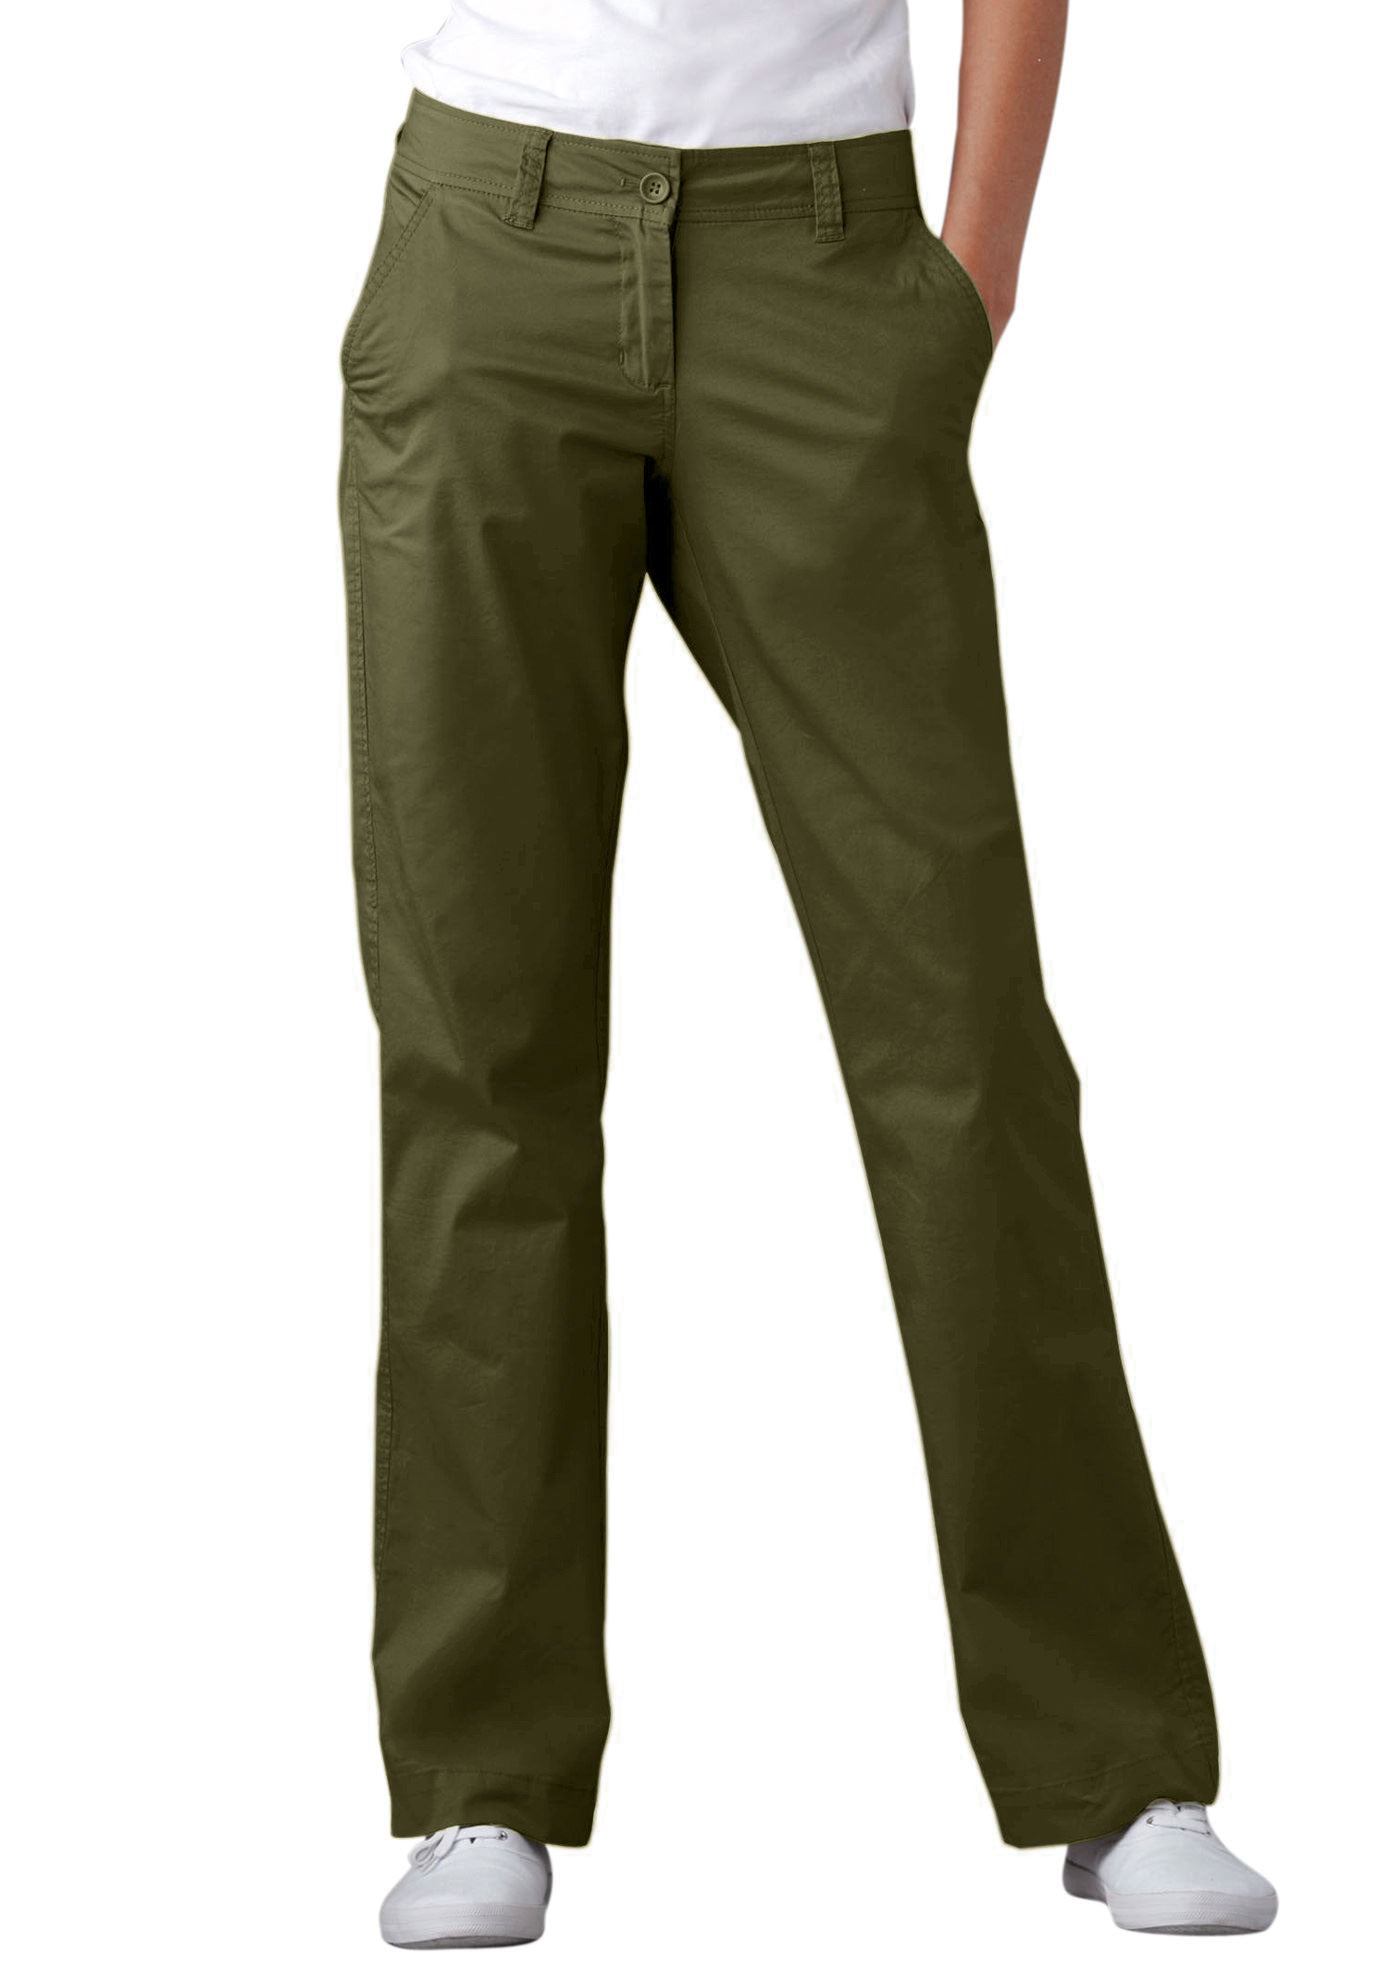 Ellos Women's Plus Size Modern Stretch Chino Pants, 14 - New Khaki